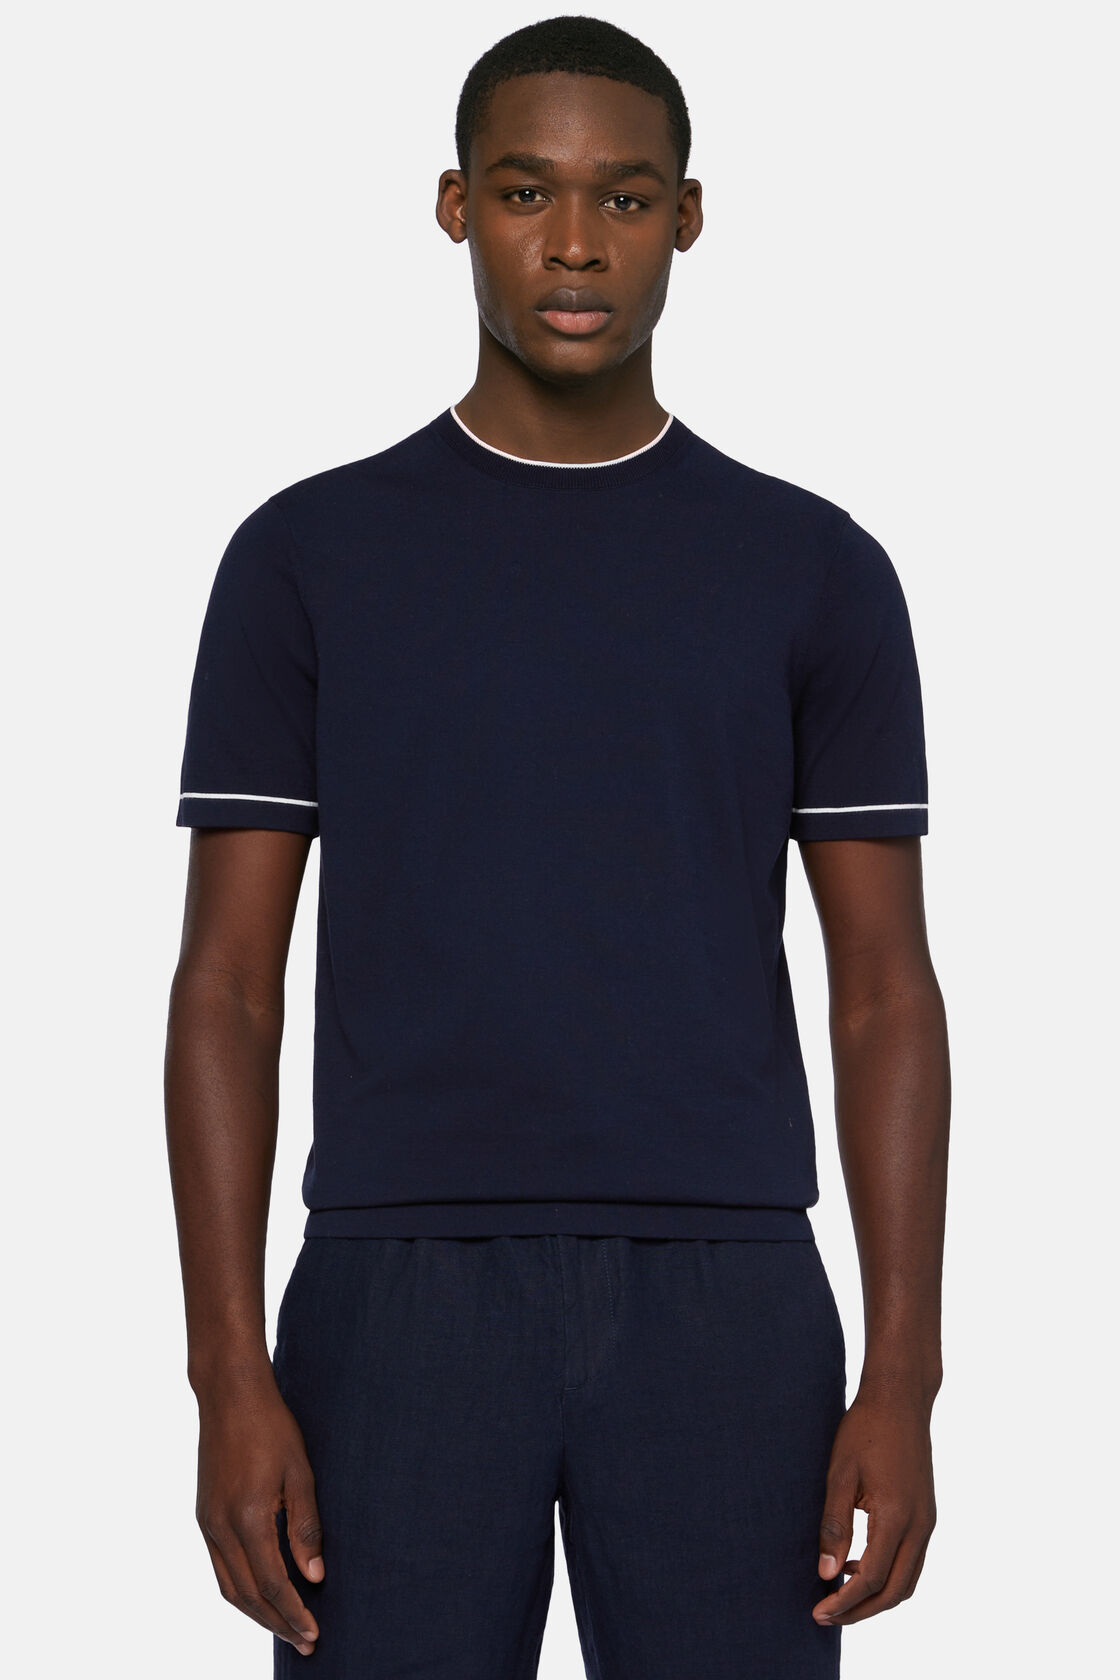 Πλεκτό μπλουζάκι από βαμβακερό κρεπ σε ναυτικό μπλε χρώμα, Navy blue, hi-res